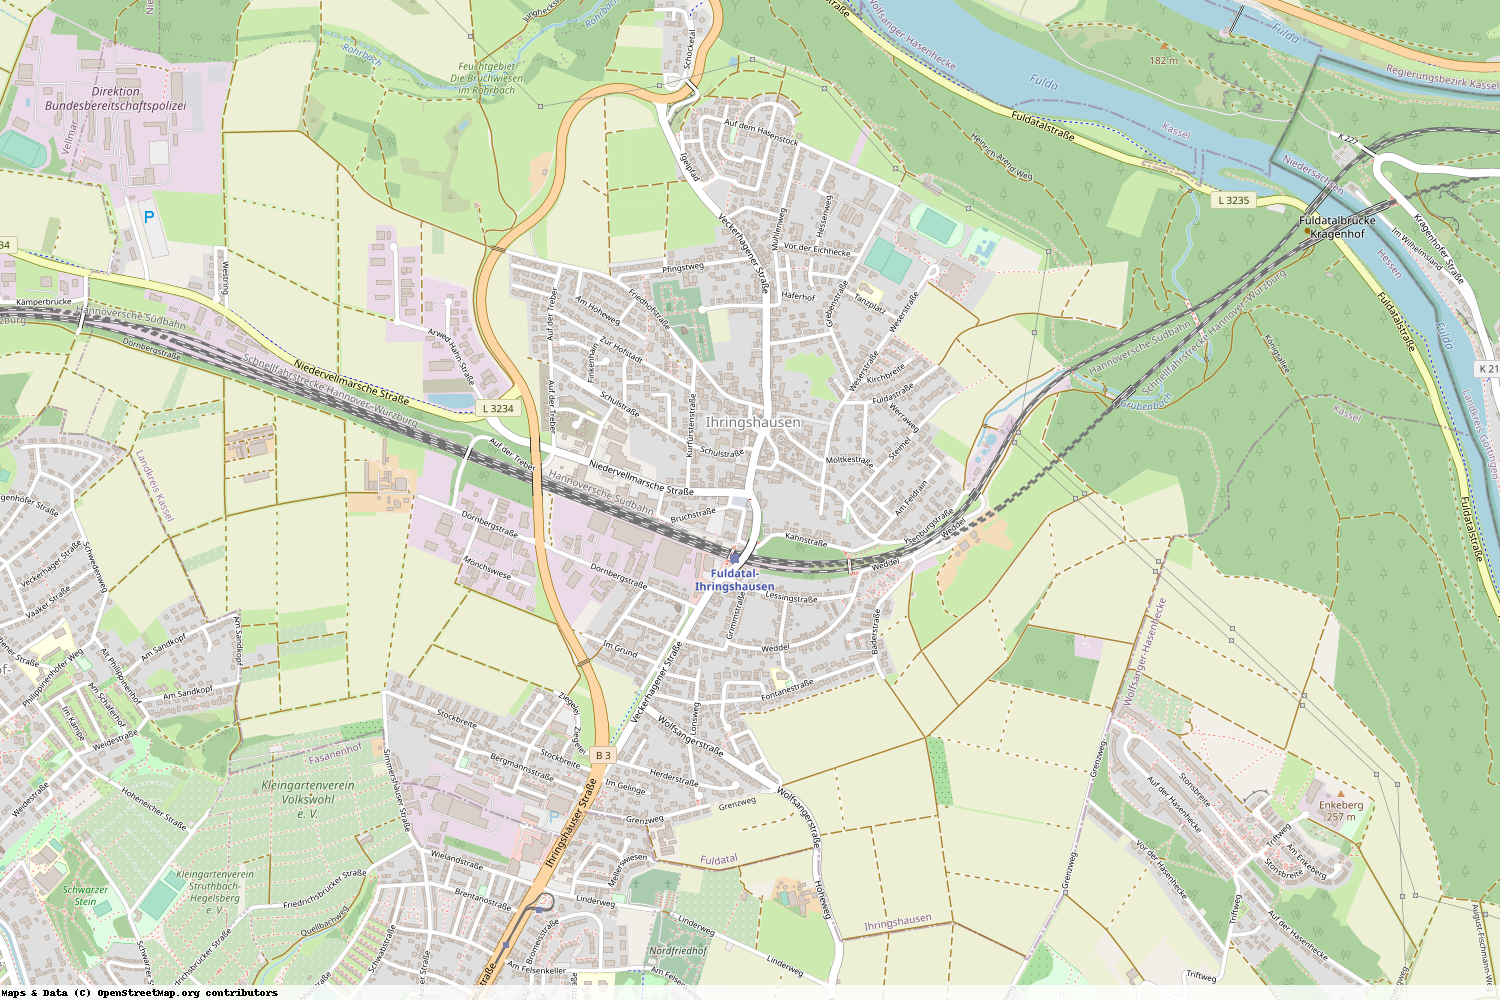 Ist gerade Stromausfall in Hessen - Kassel - Fuldatal?